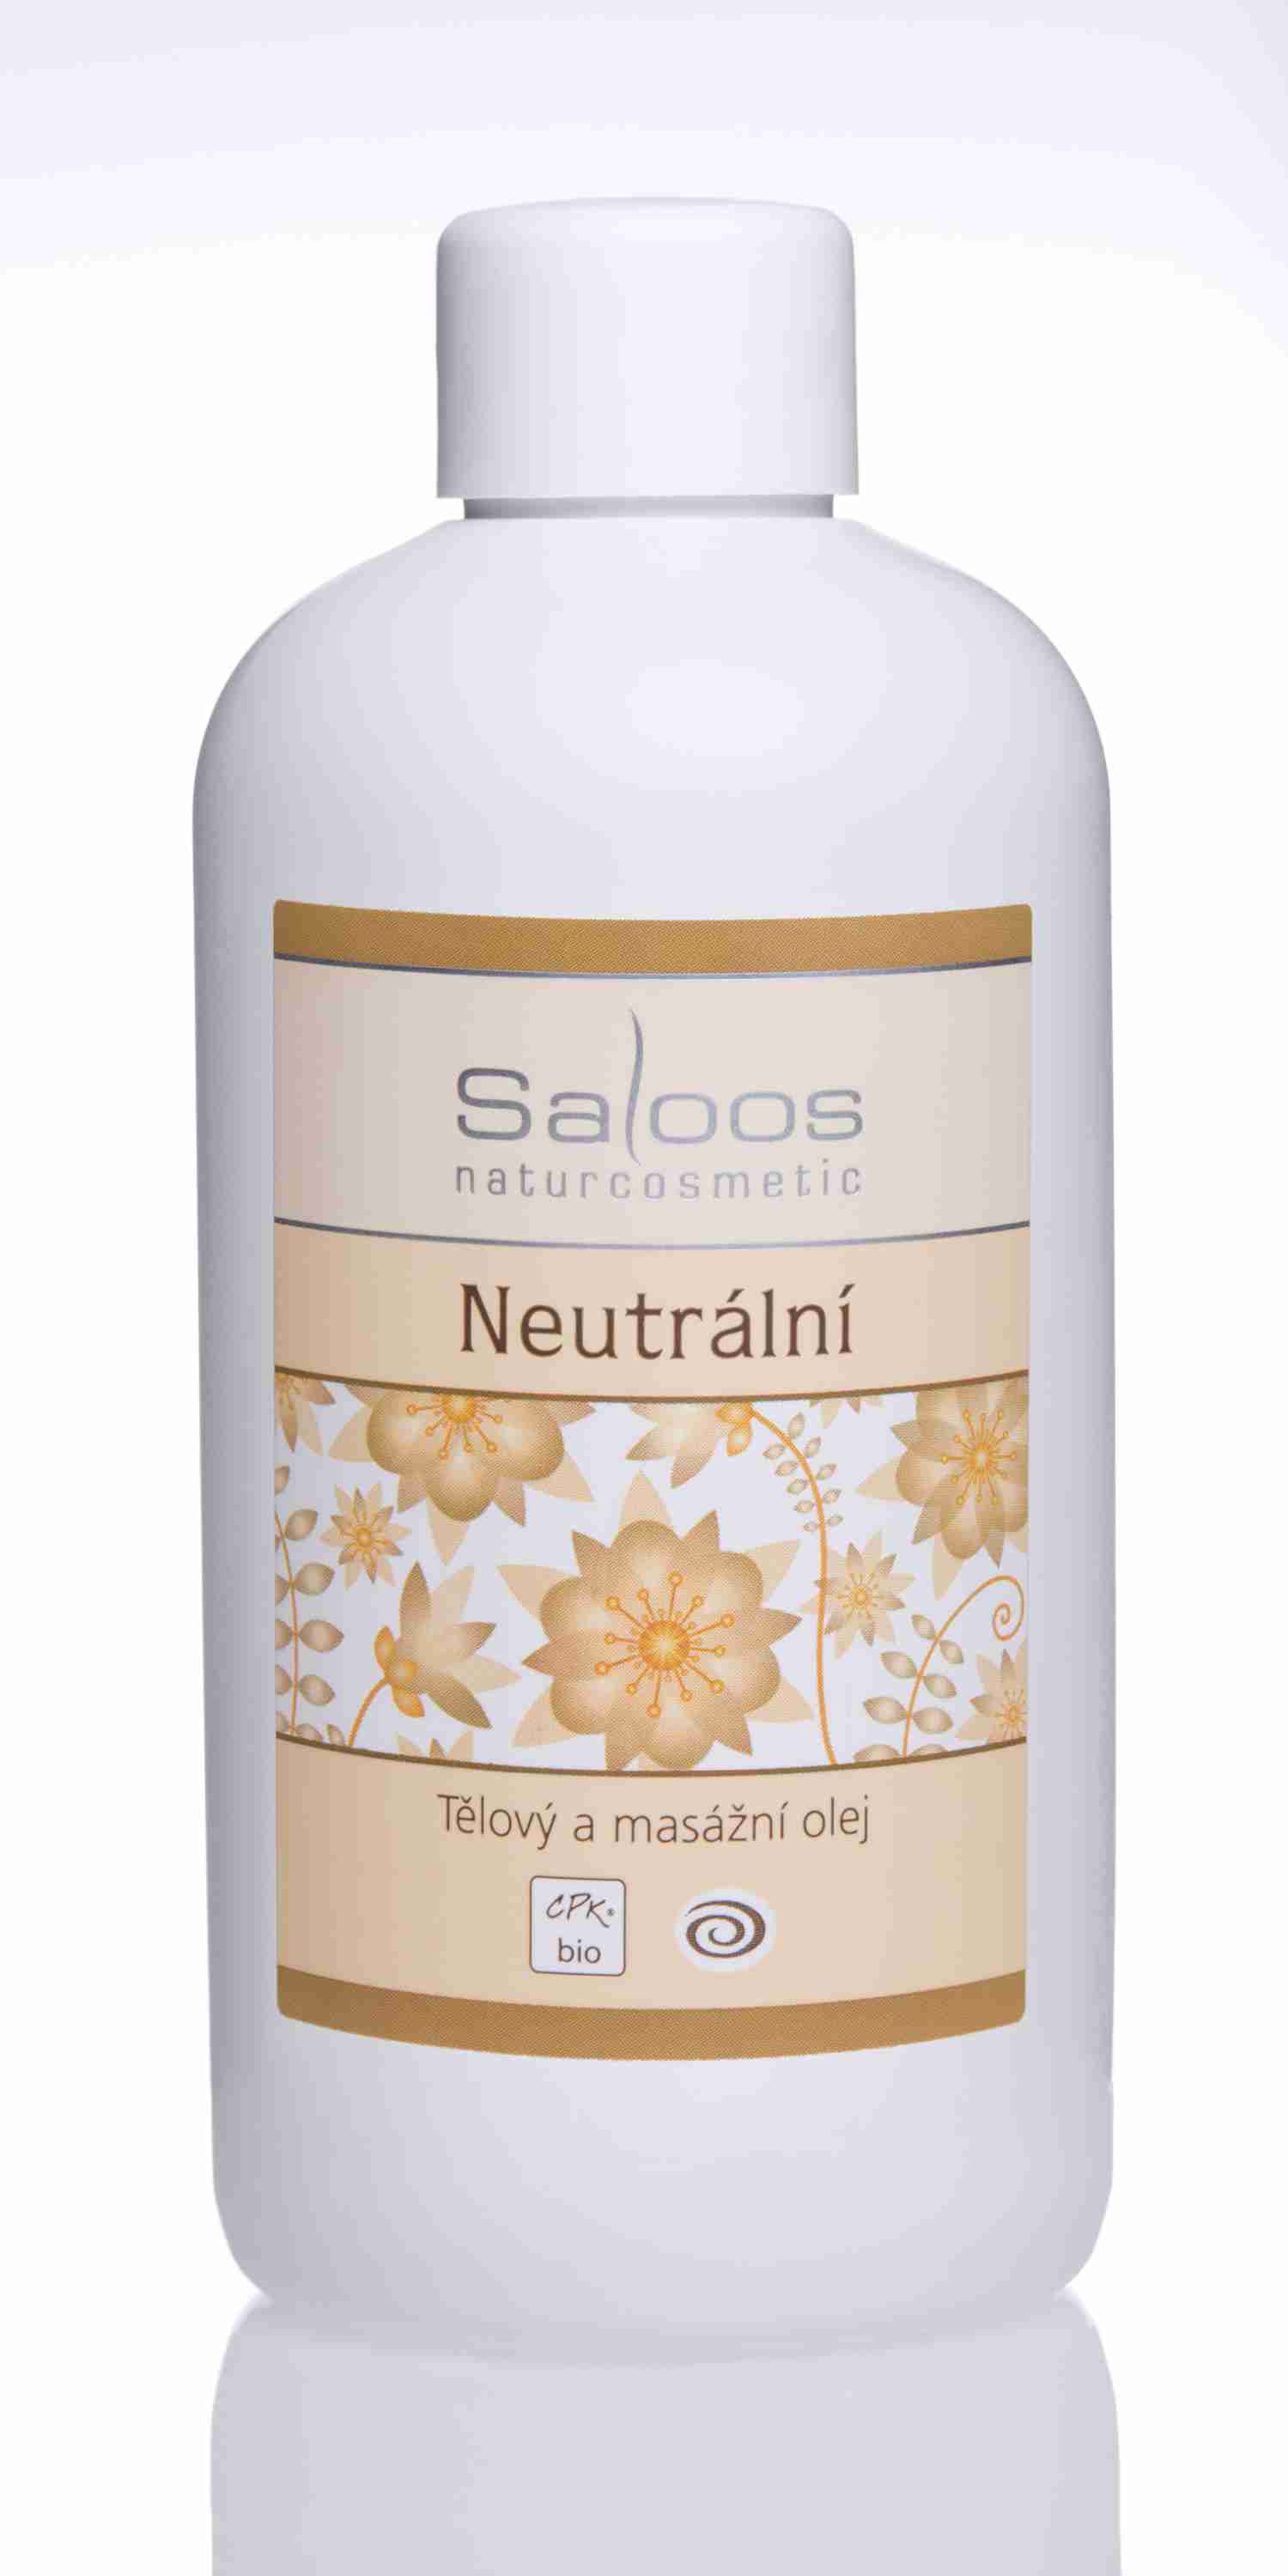 Saloos Bio Neutrální - tělový a masážní olej Balení: 500 ml